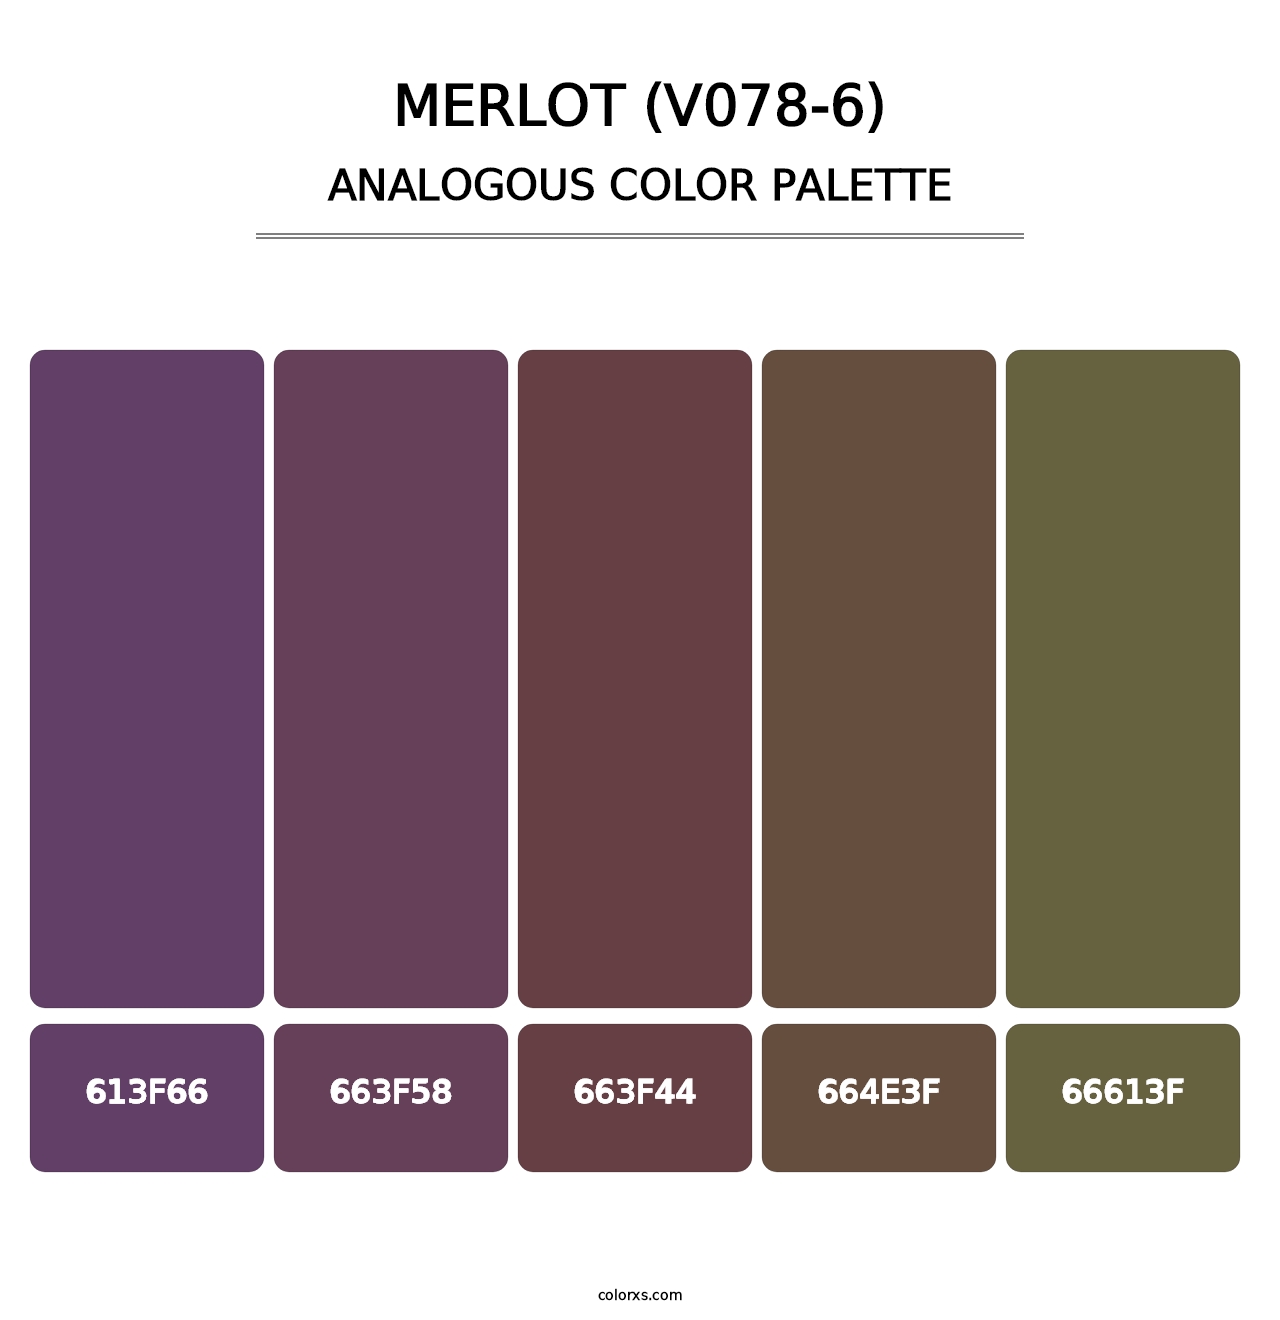 Merlot (V078-6) - Analogous Color Palette